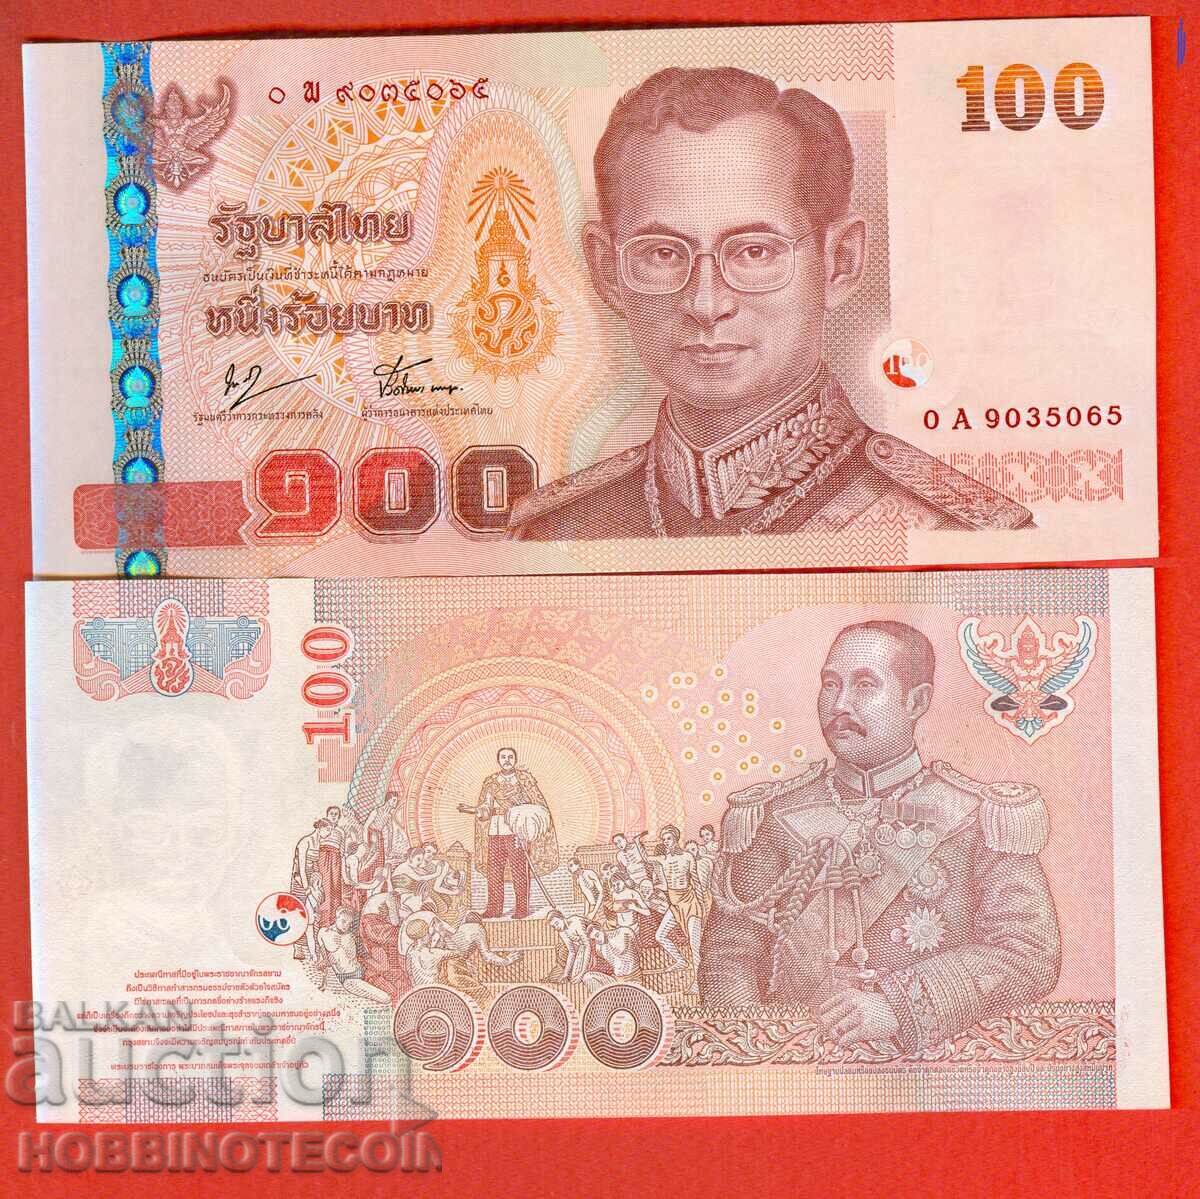 THAILANDIA 100 BATA NOU emisiune 2005 - sub 76 NOU UNC